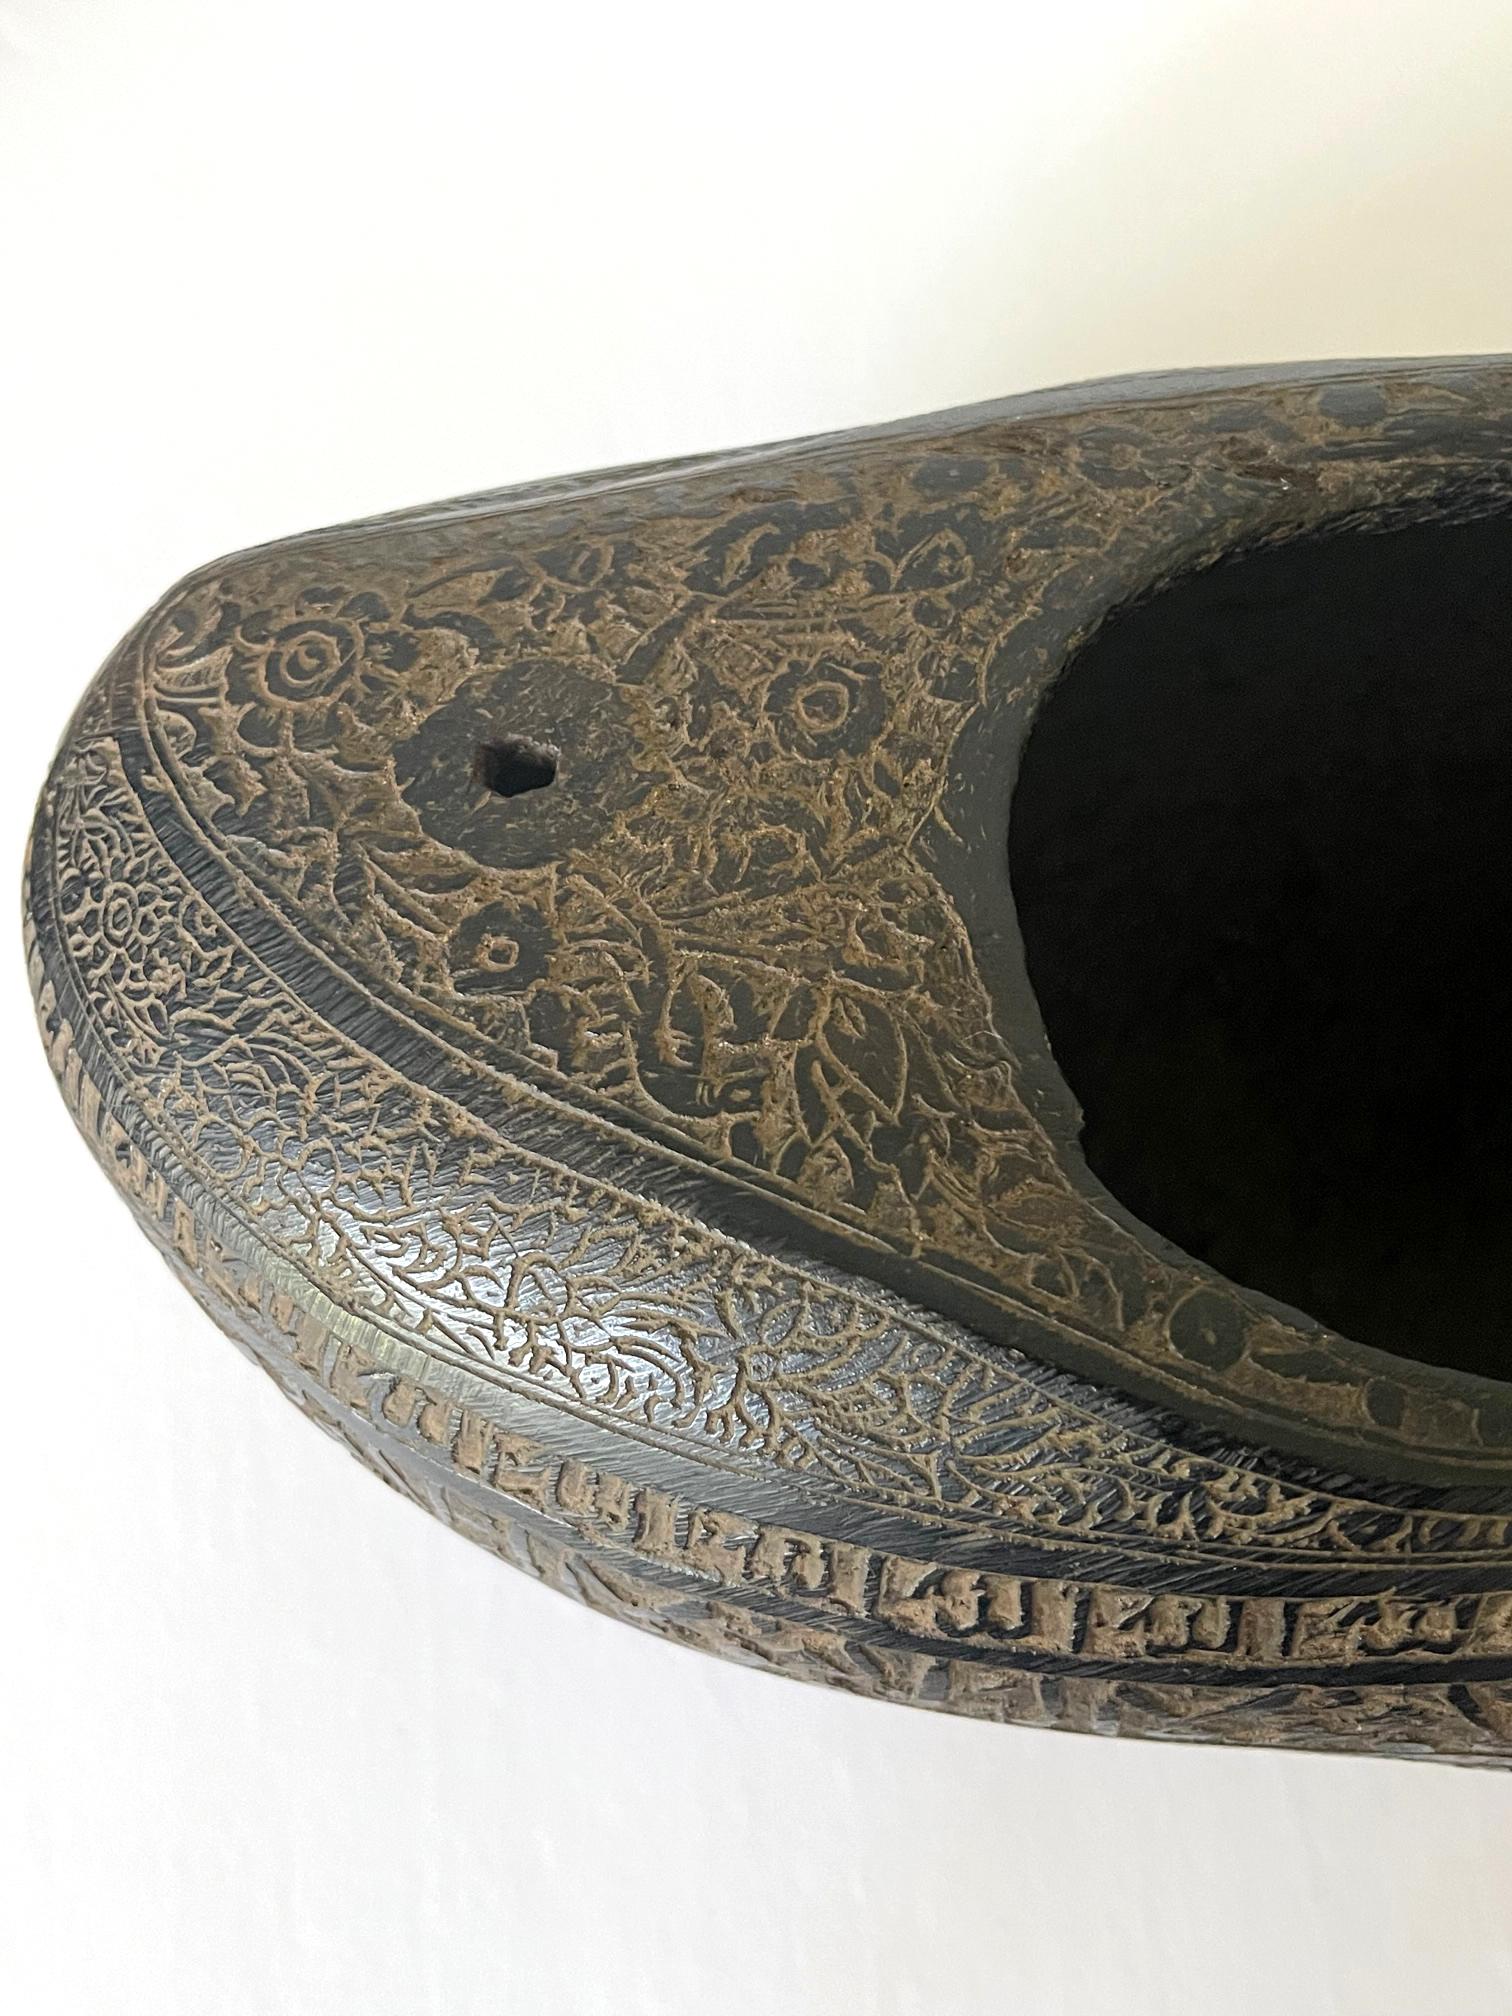 Elaborately Carved Antique Beggar's Bowl Kashkul For Sale 3